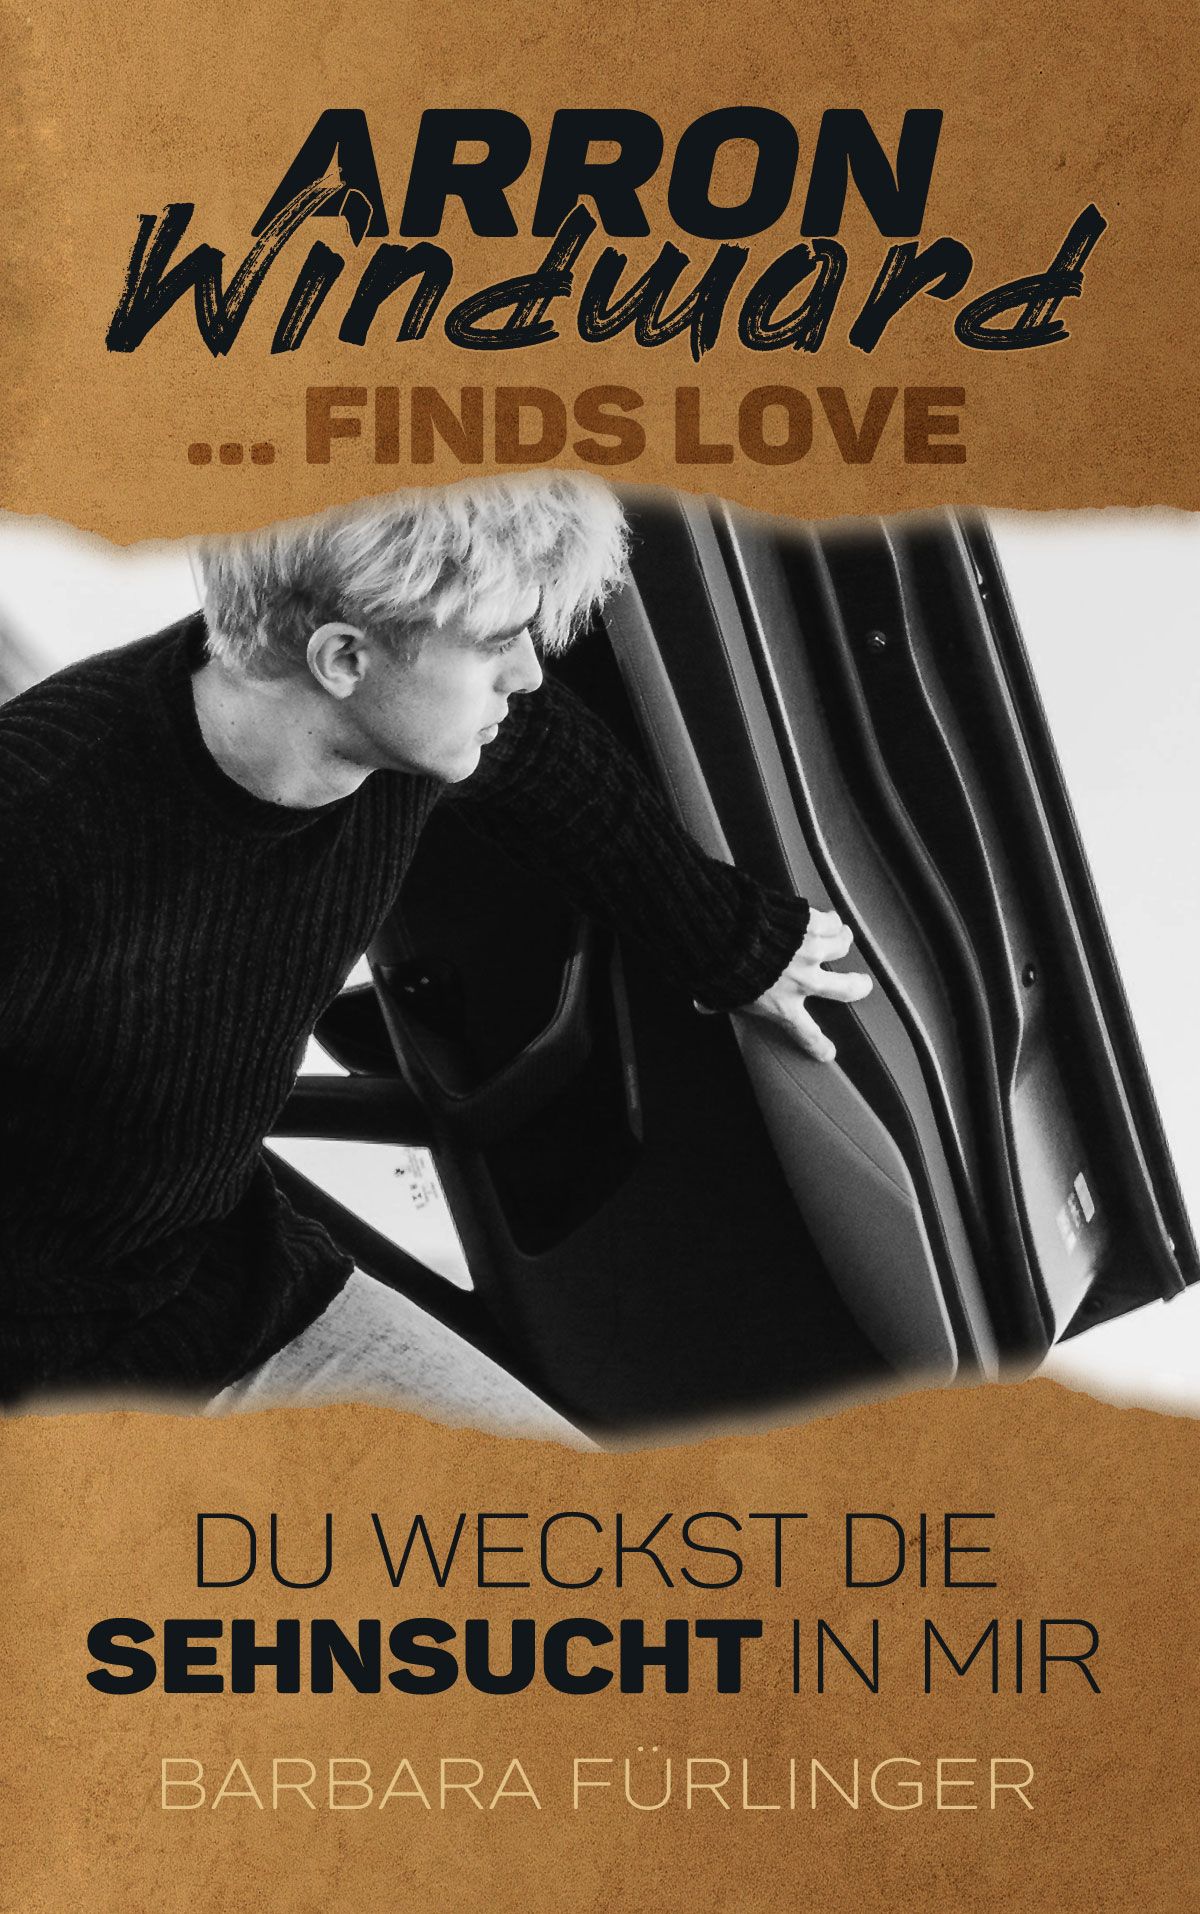 Arron Windward …Finds Love: Du weckst die SEHNSUCHT in mir